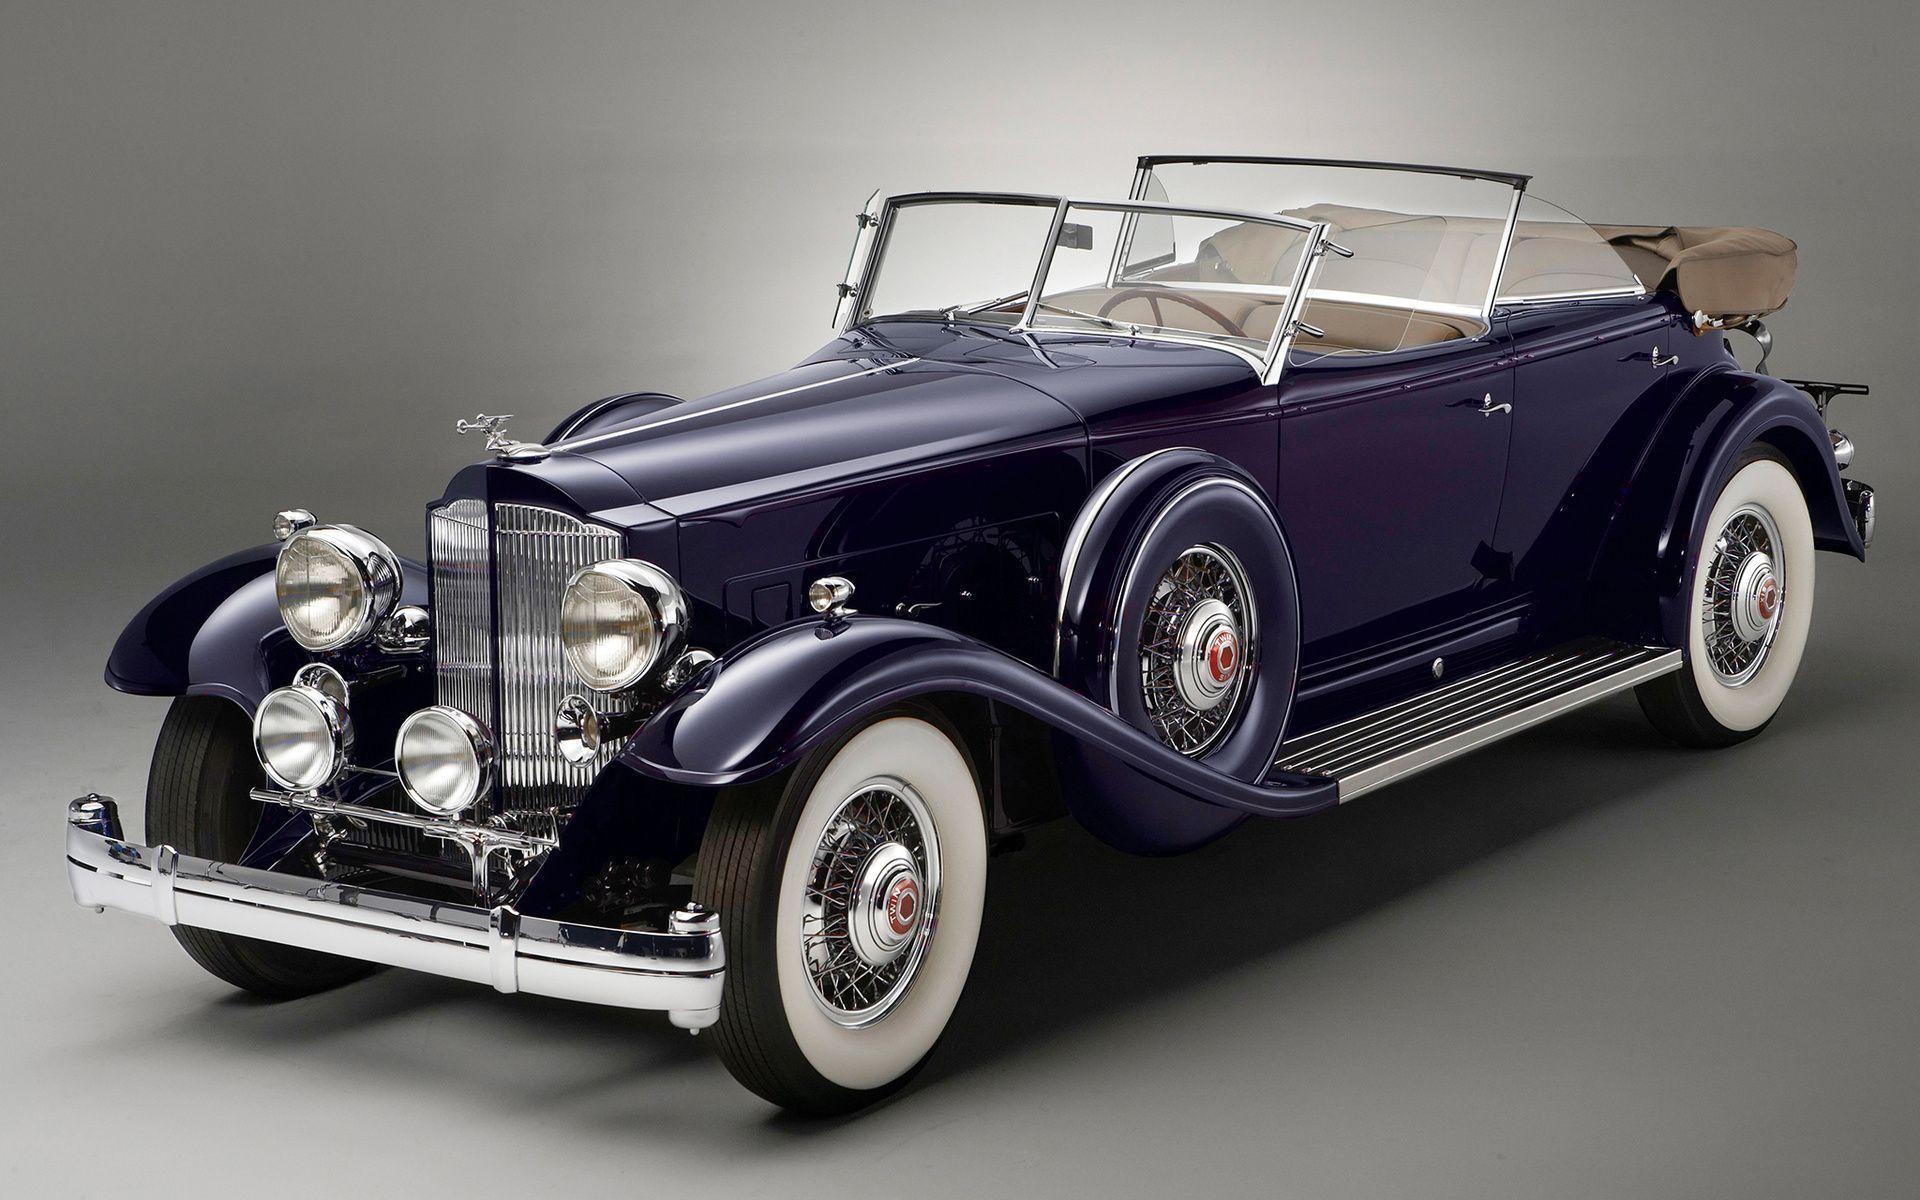 1920x1200 خلفية السيارة القديمة. تم حفظه على الحائط. سيارة كلاسيكية. سيارة